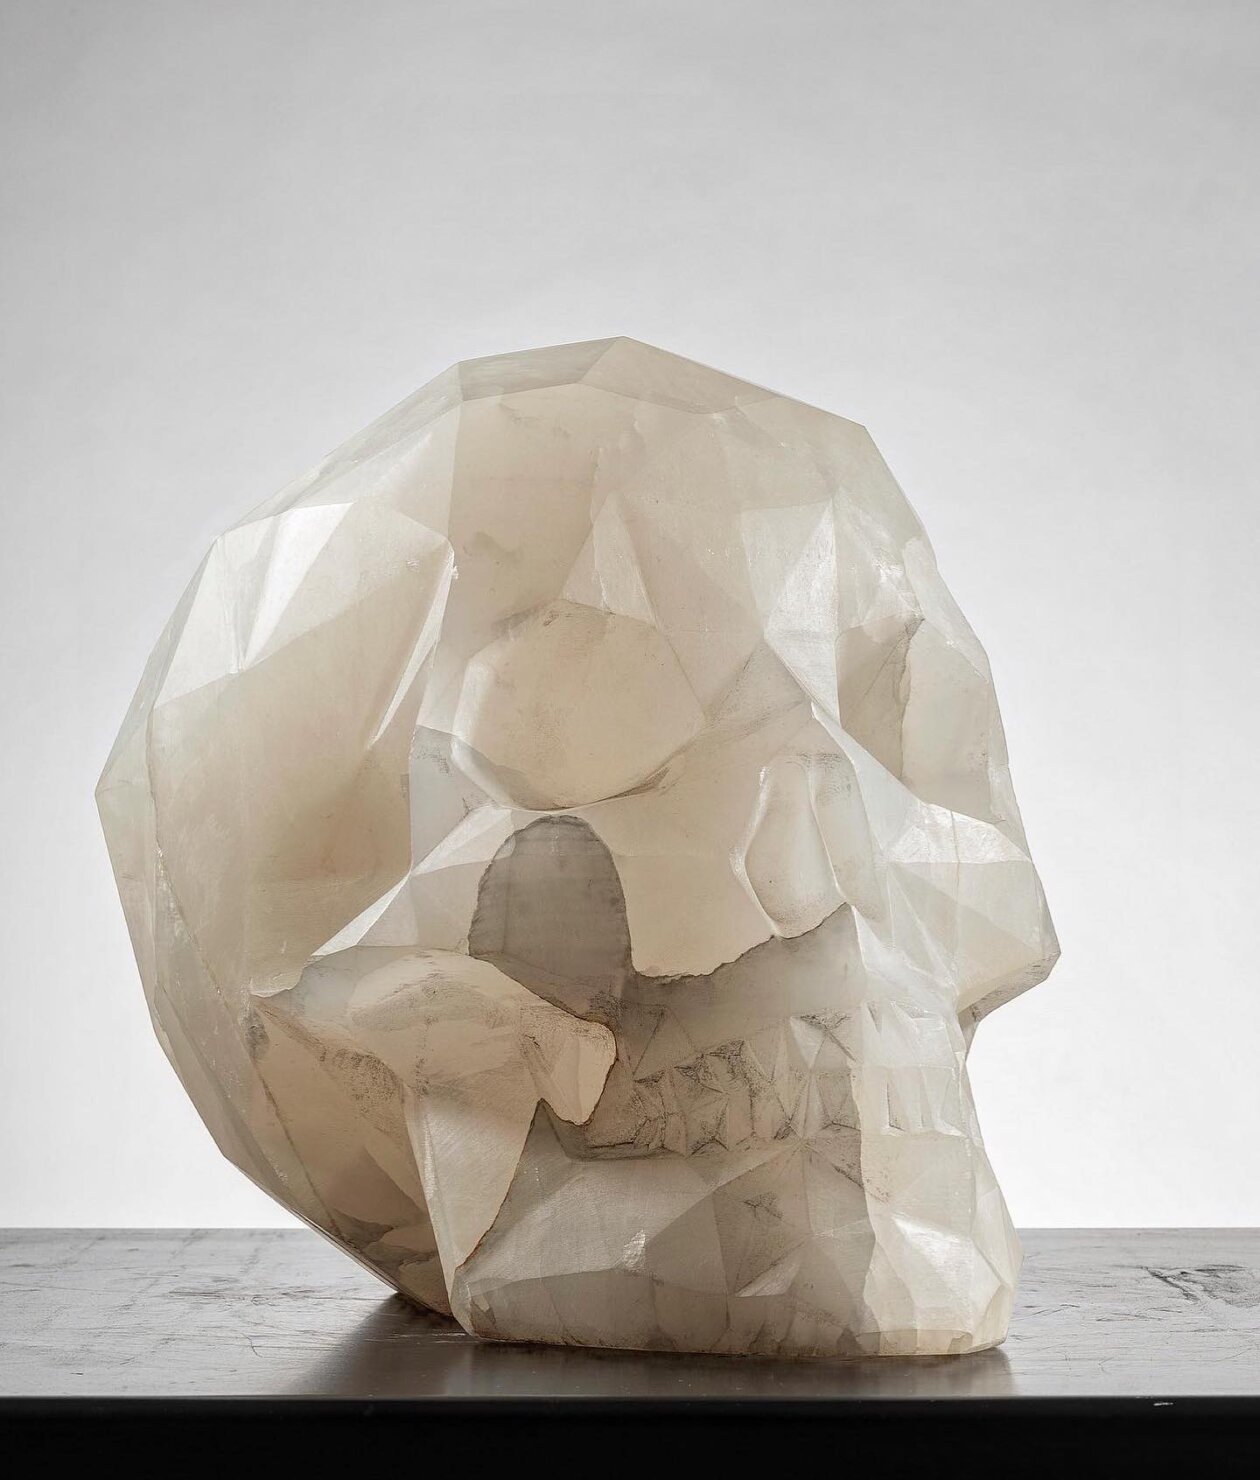 Diamond, A Skull Marble Sculpture By Massimiliano Pelletti (1)